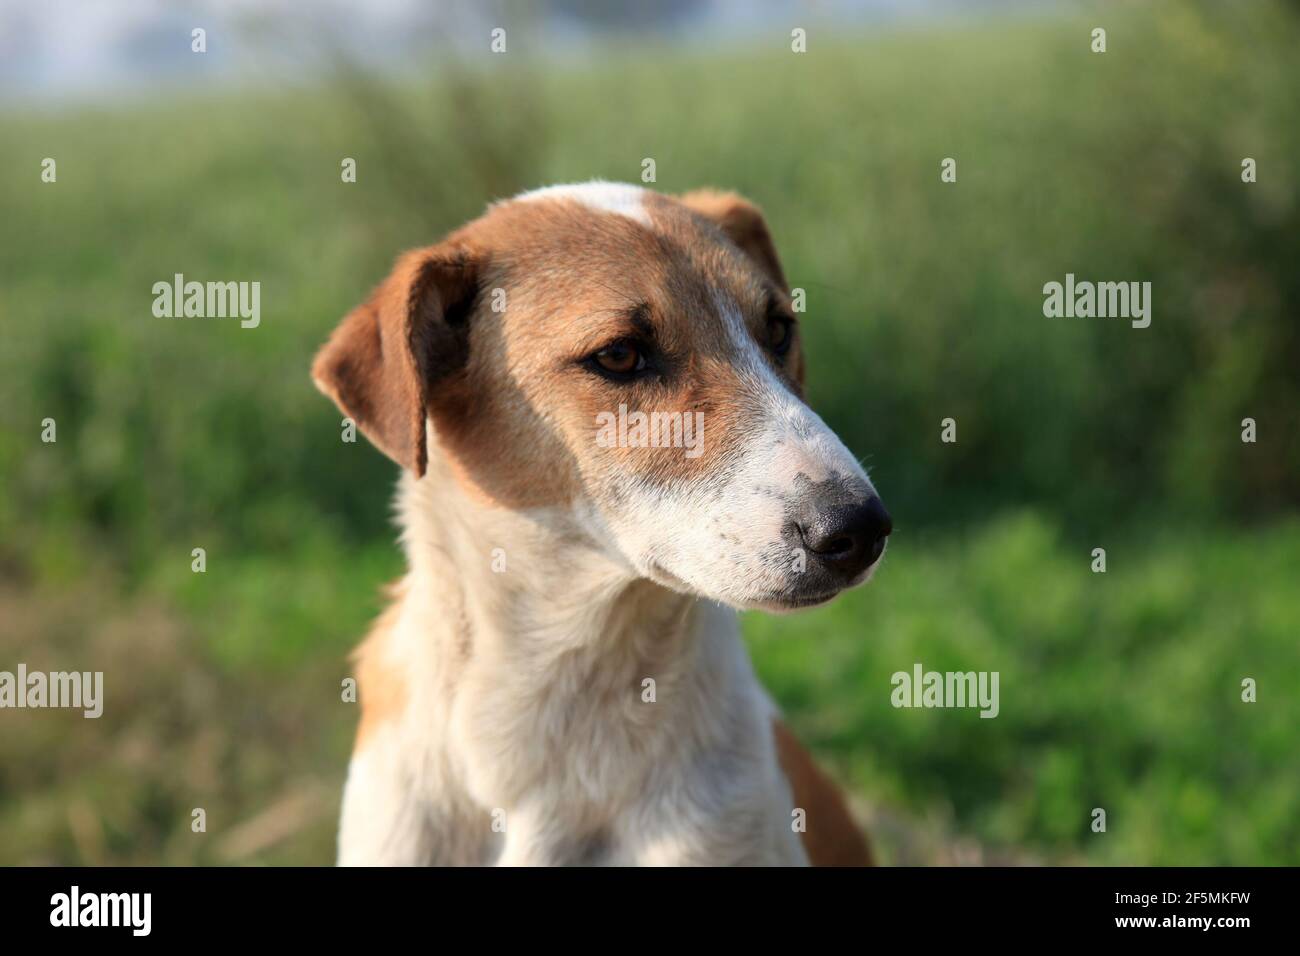 Pet dog looking away outdoors Stock Photo